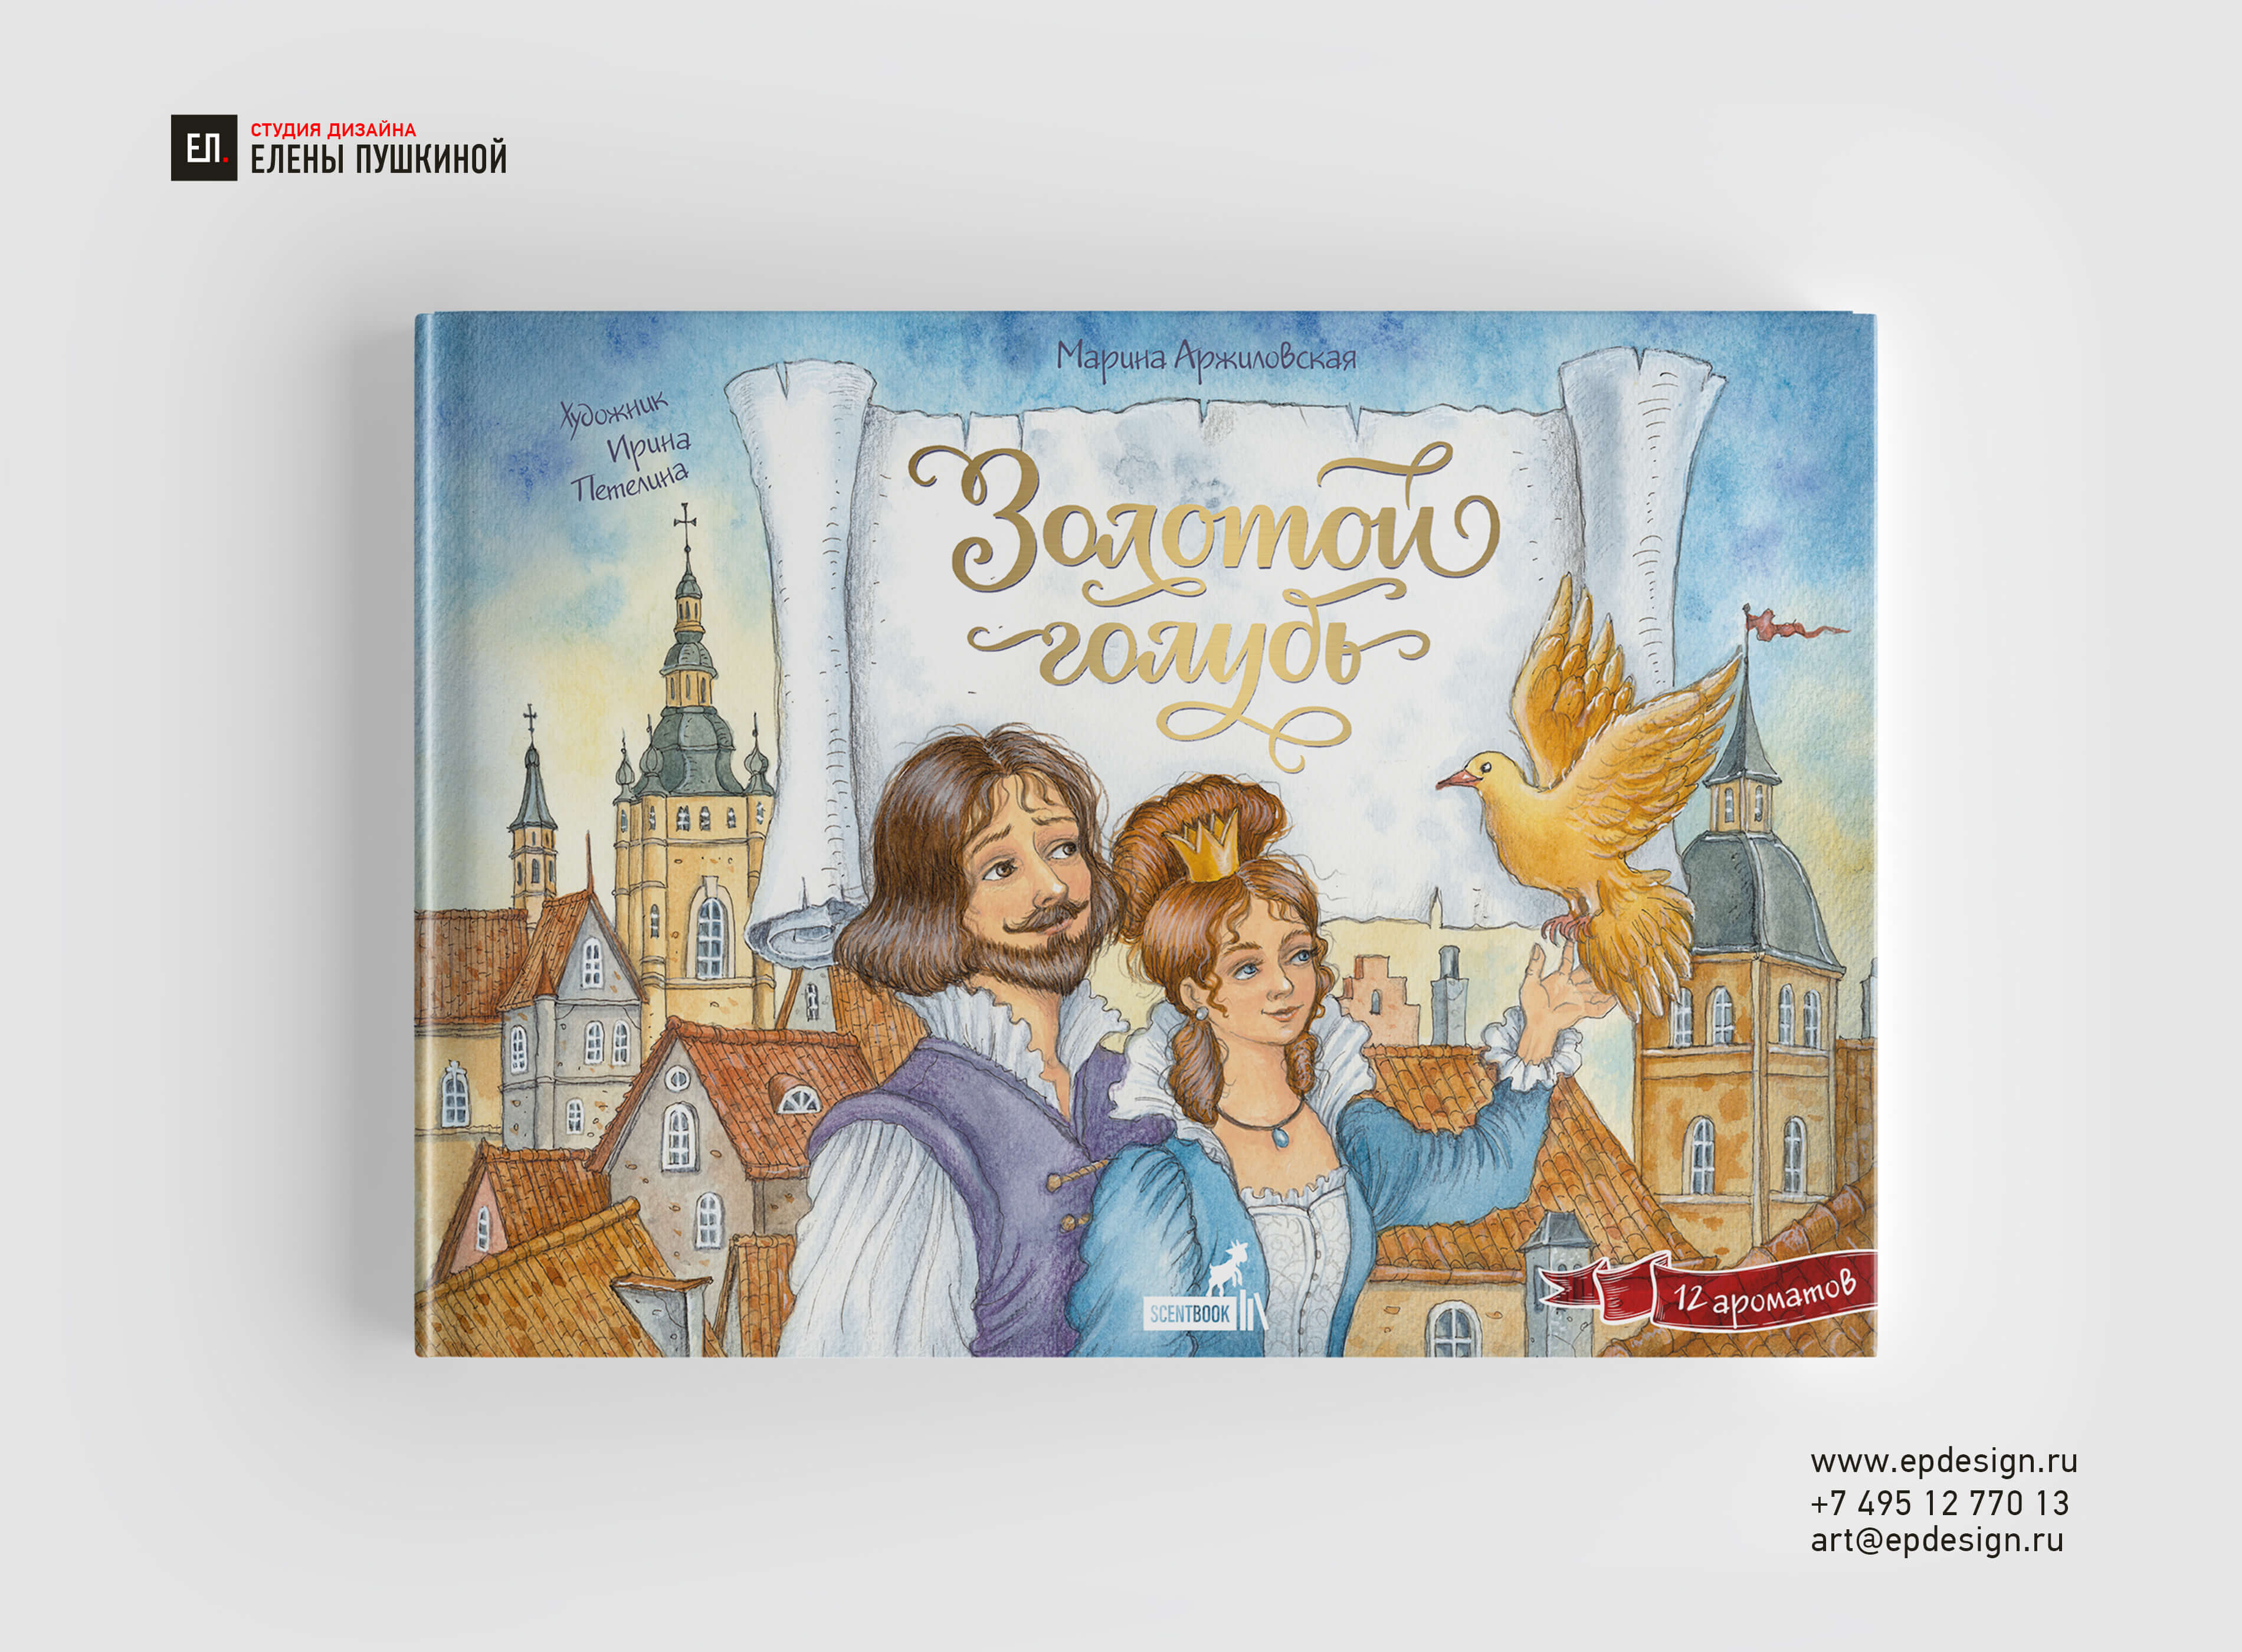 Создание обложки ароматной книги для детей — «Золотой голубь» Дизайн обложек Портфолио